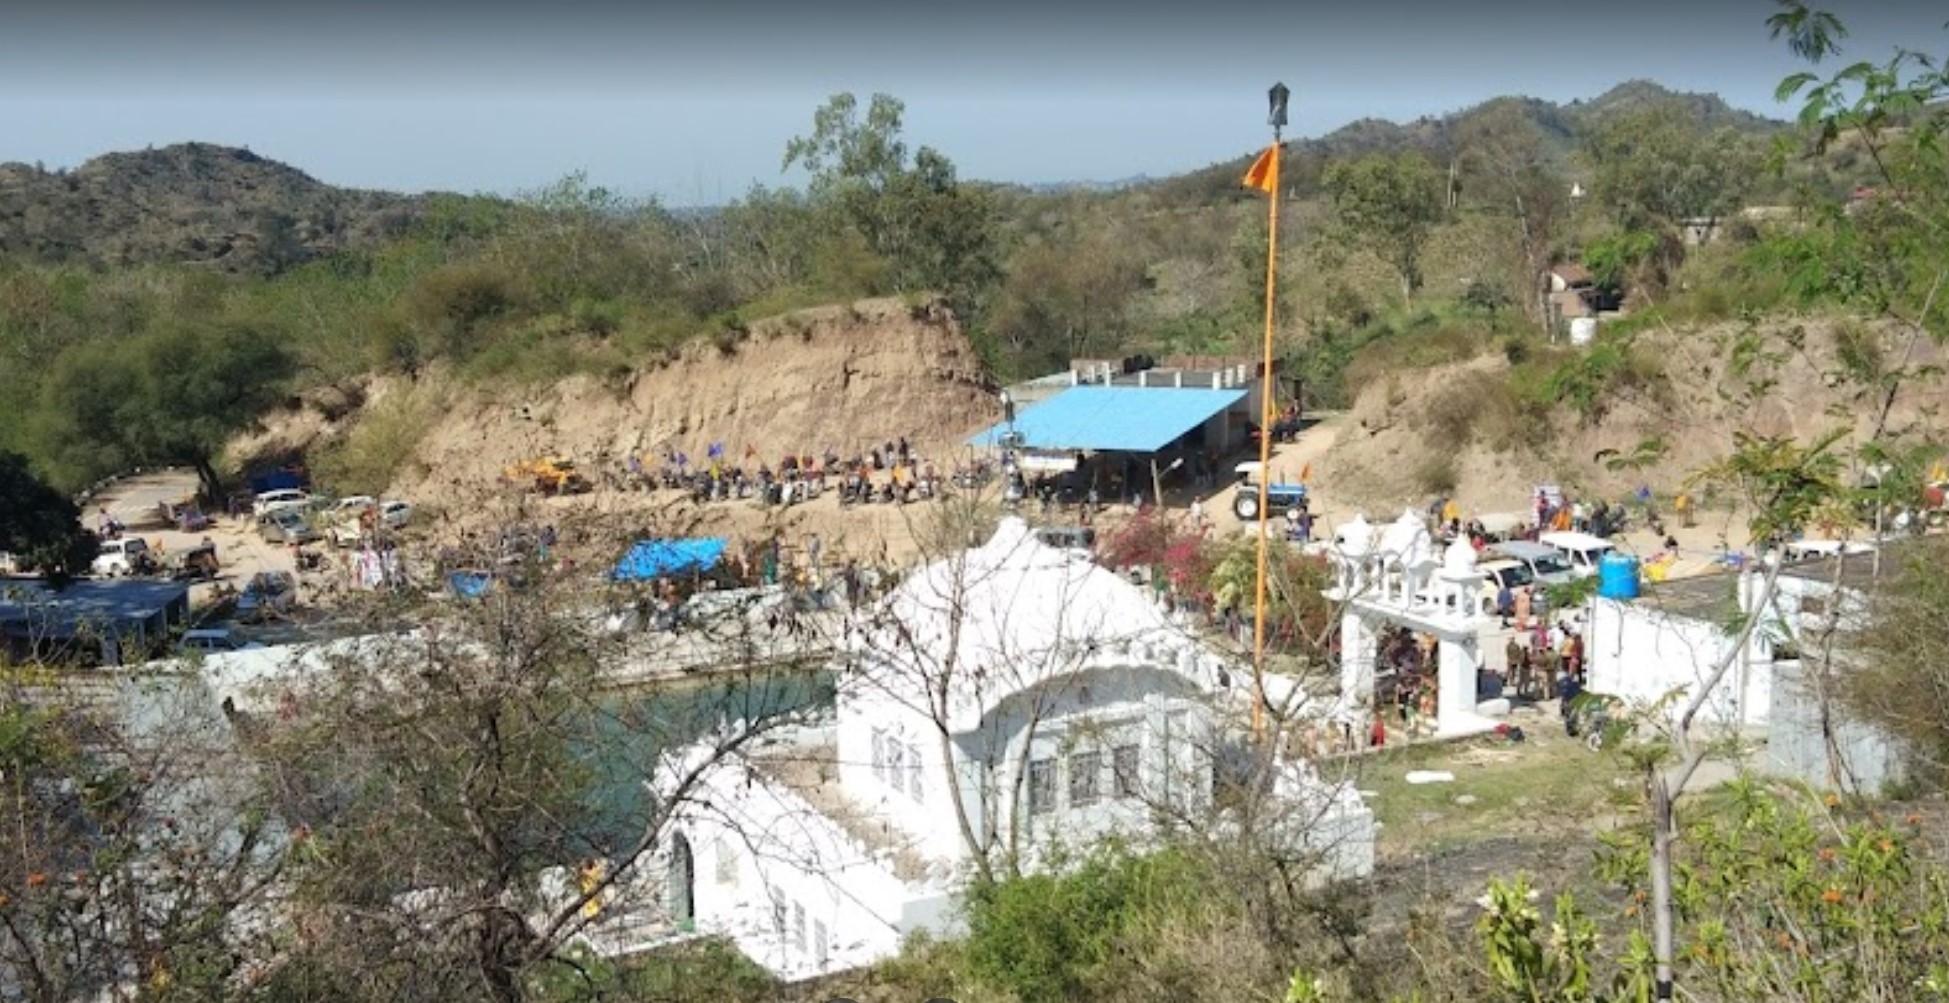 Gurdwara Triveni Sahib – Bilaspur